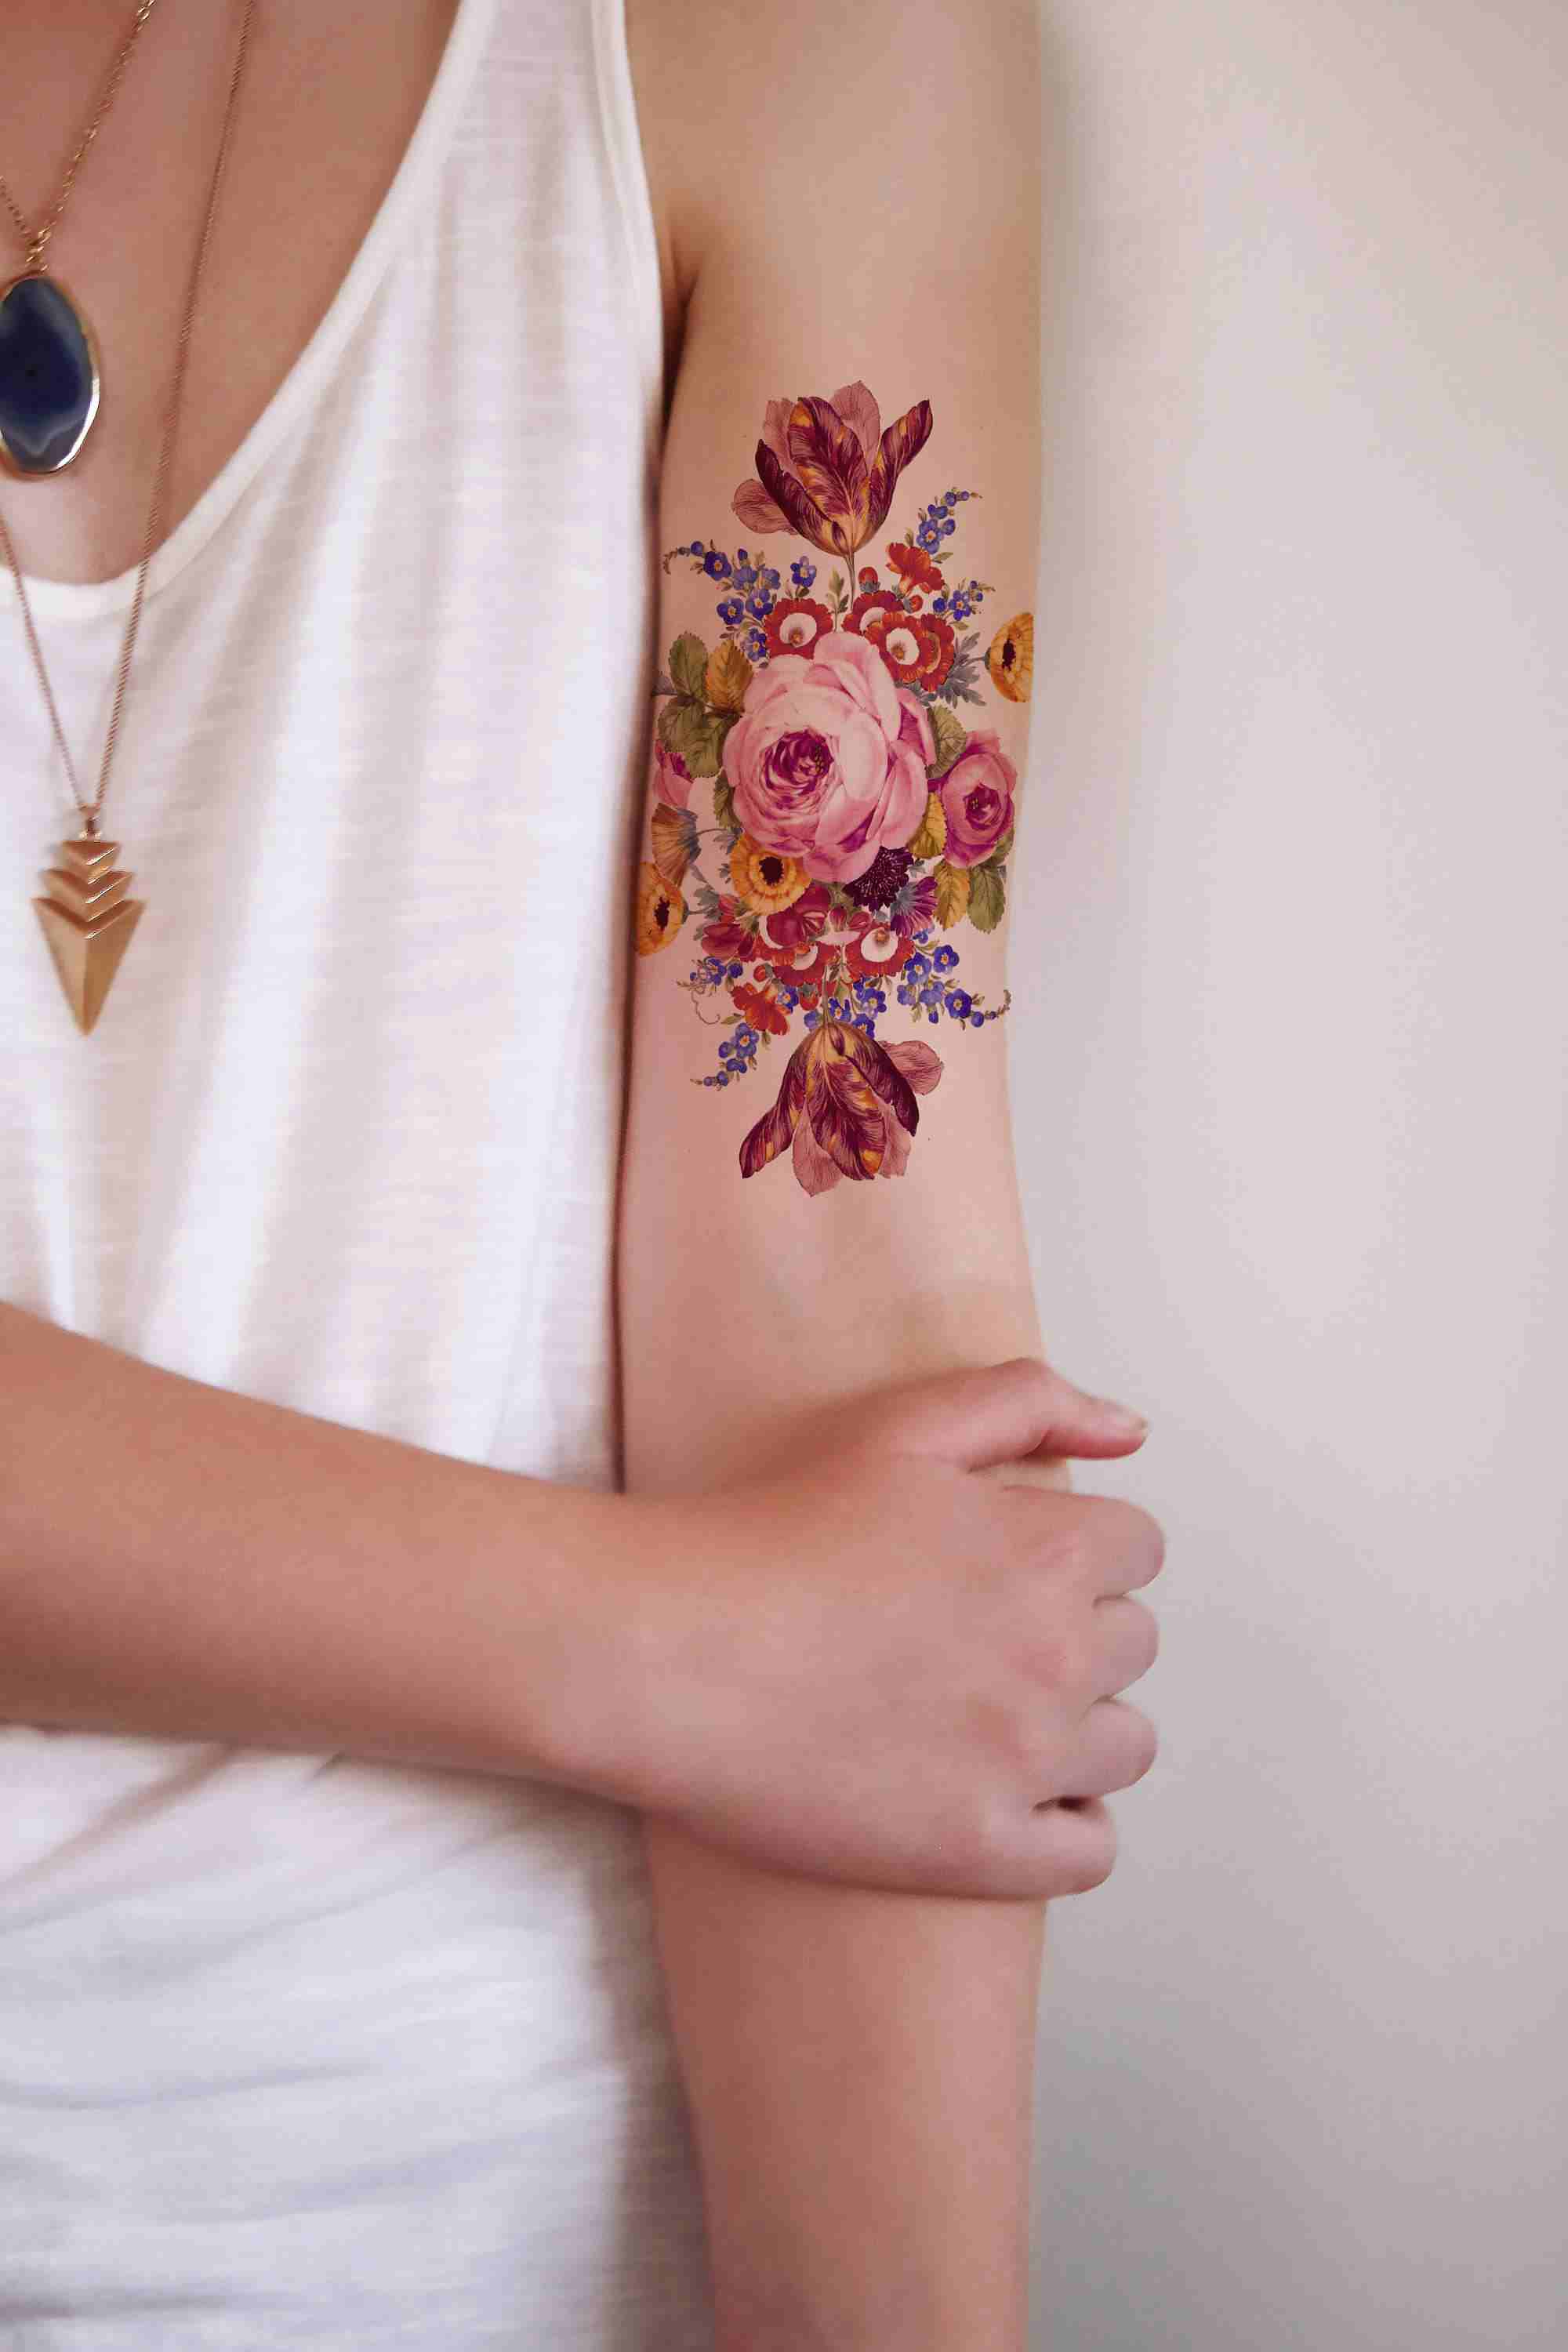 Vintage blomma tatuering överarm tatuering trender 2019